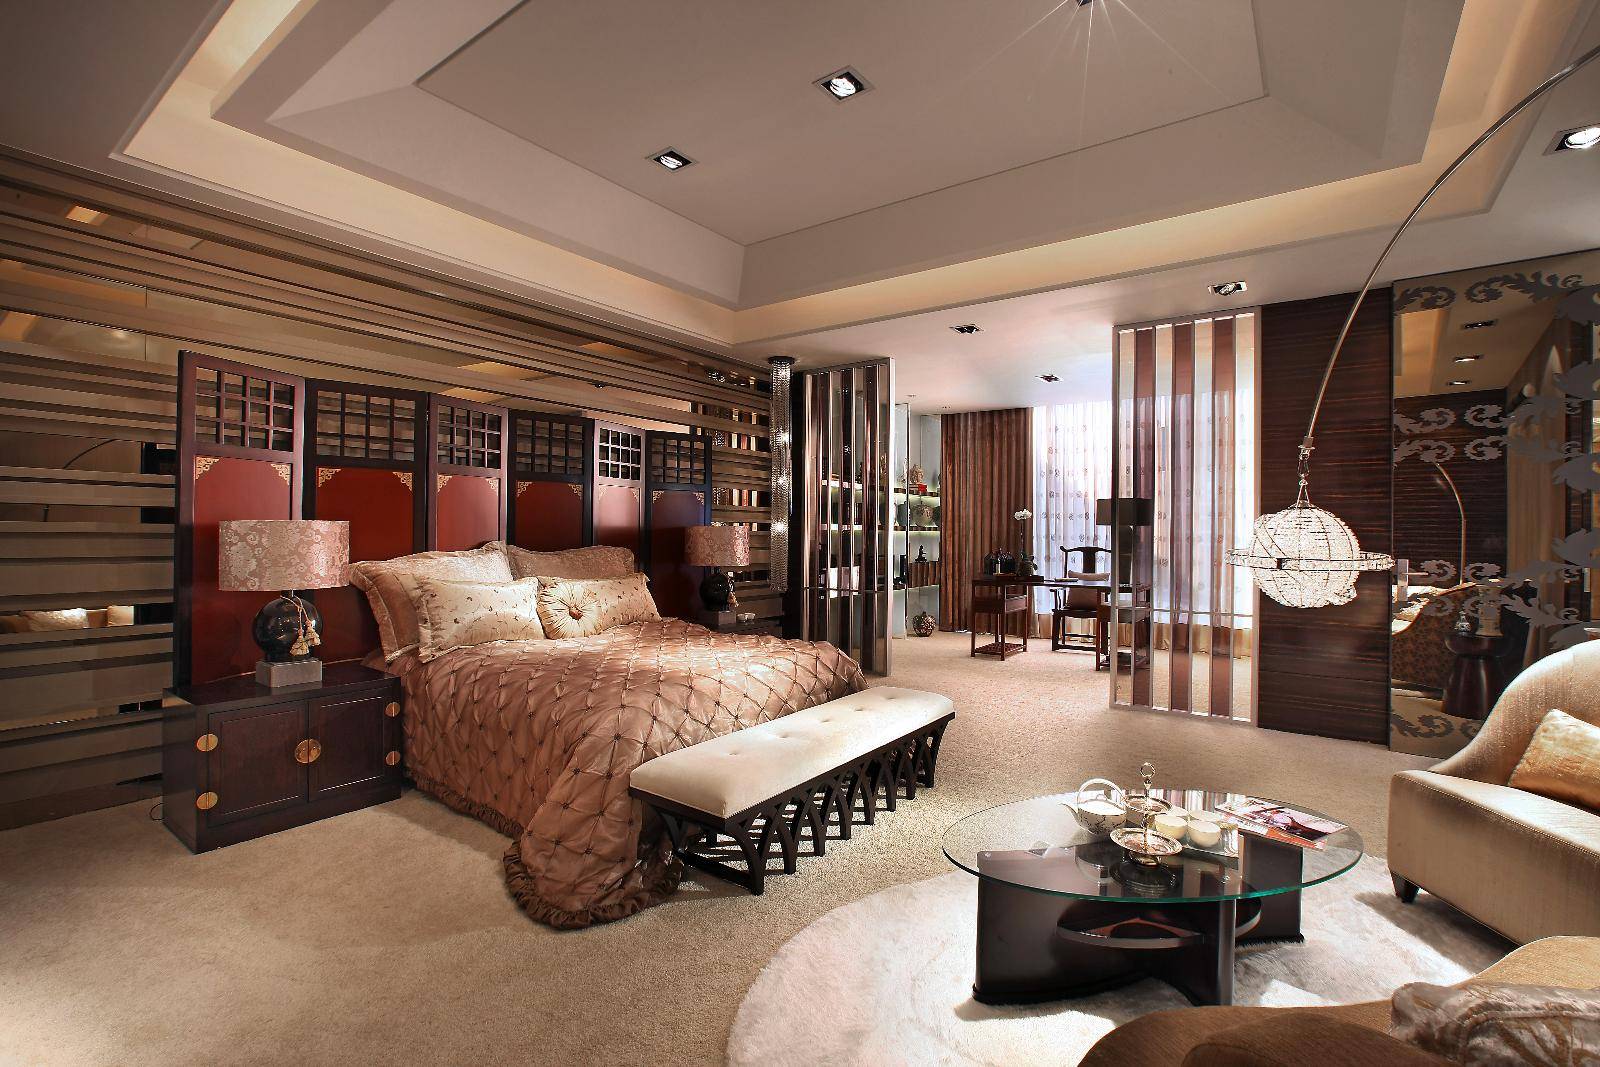 中式新古典混搭卧室设计案例